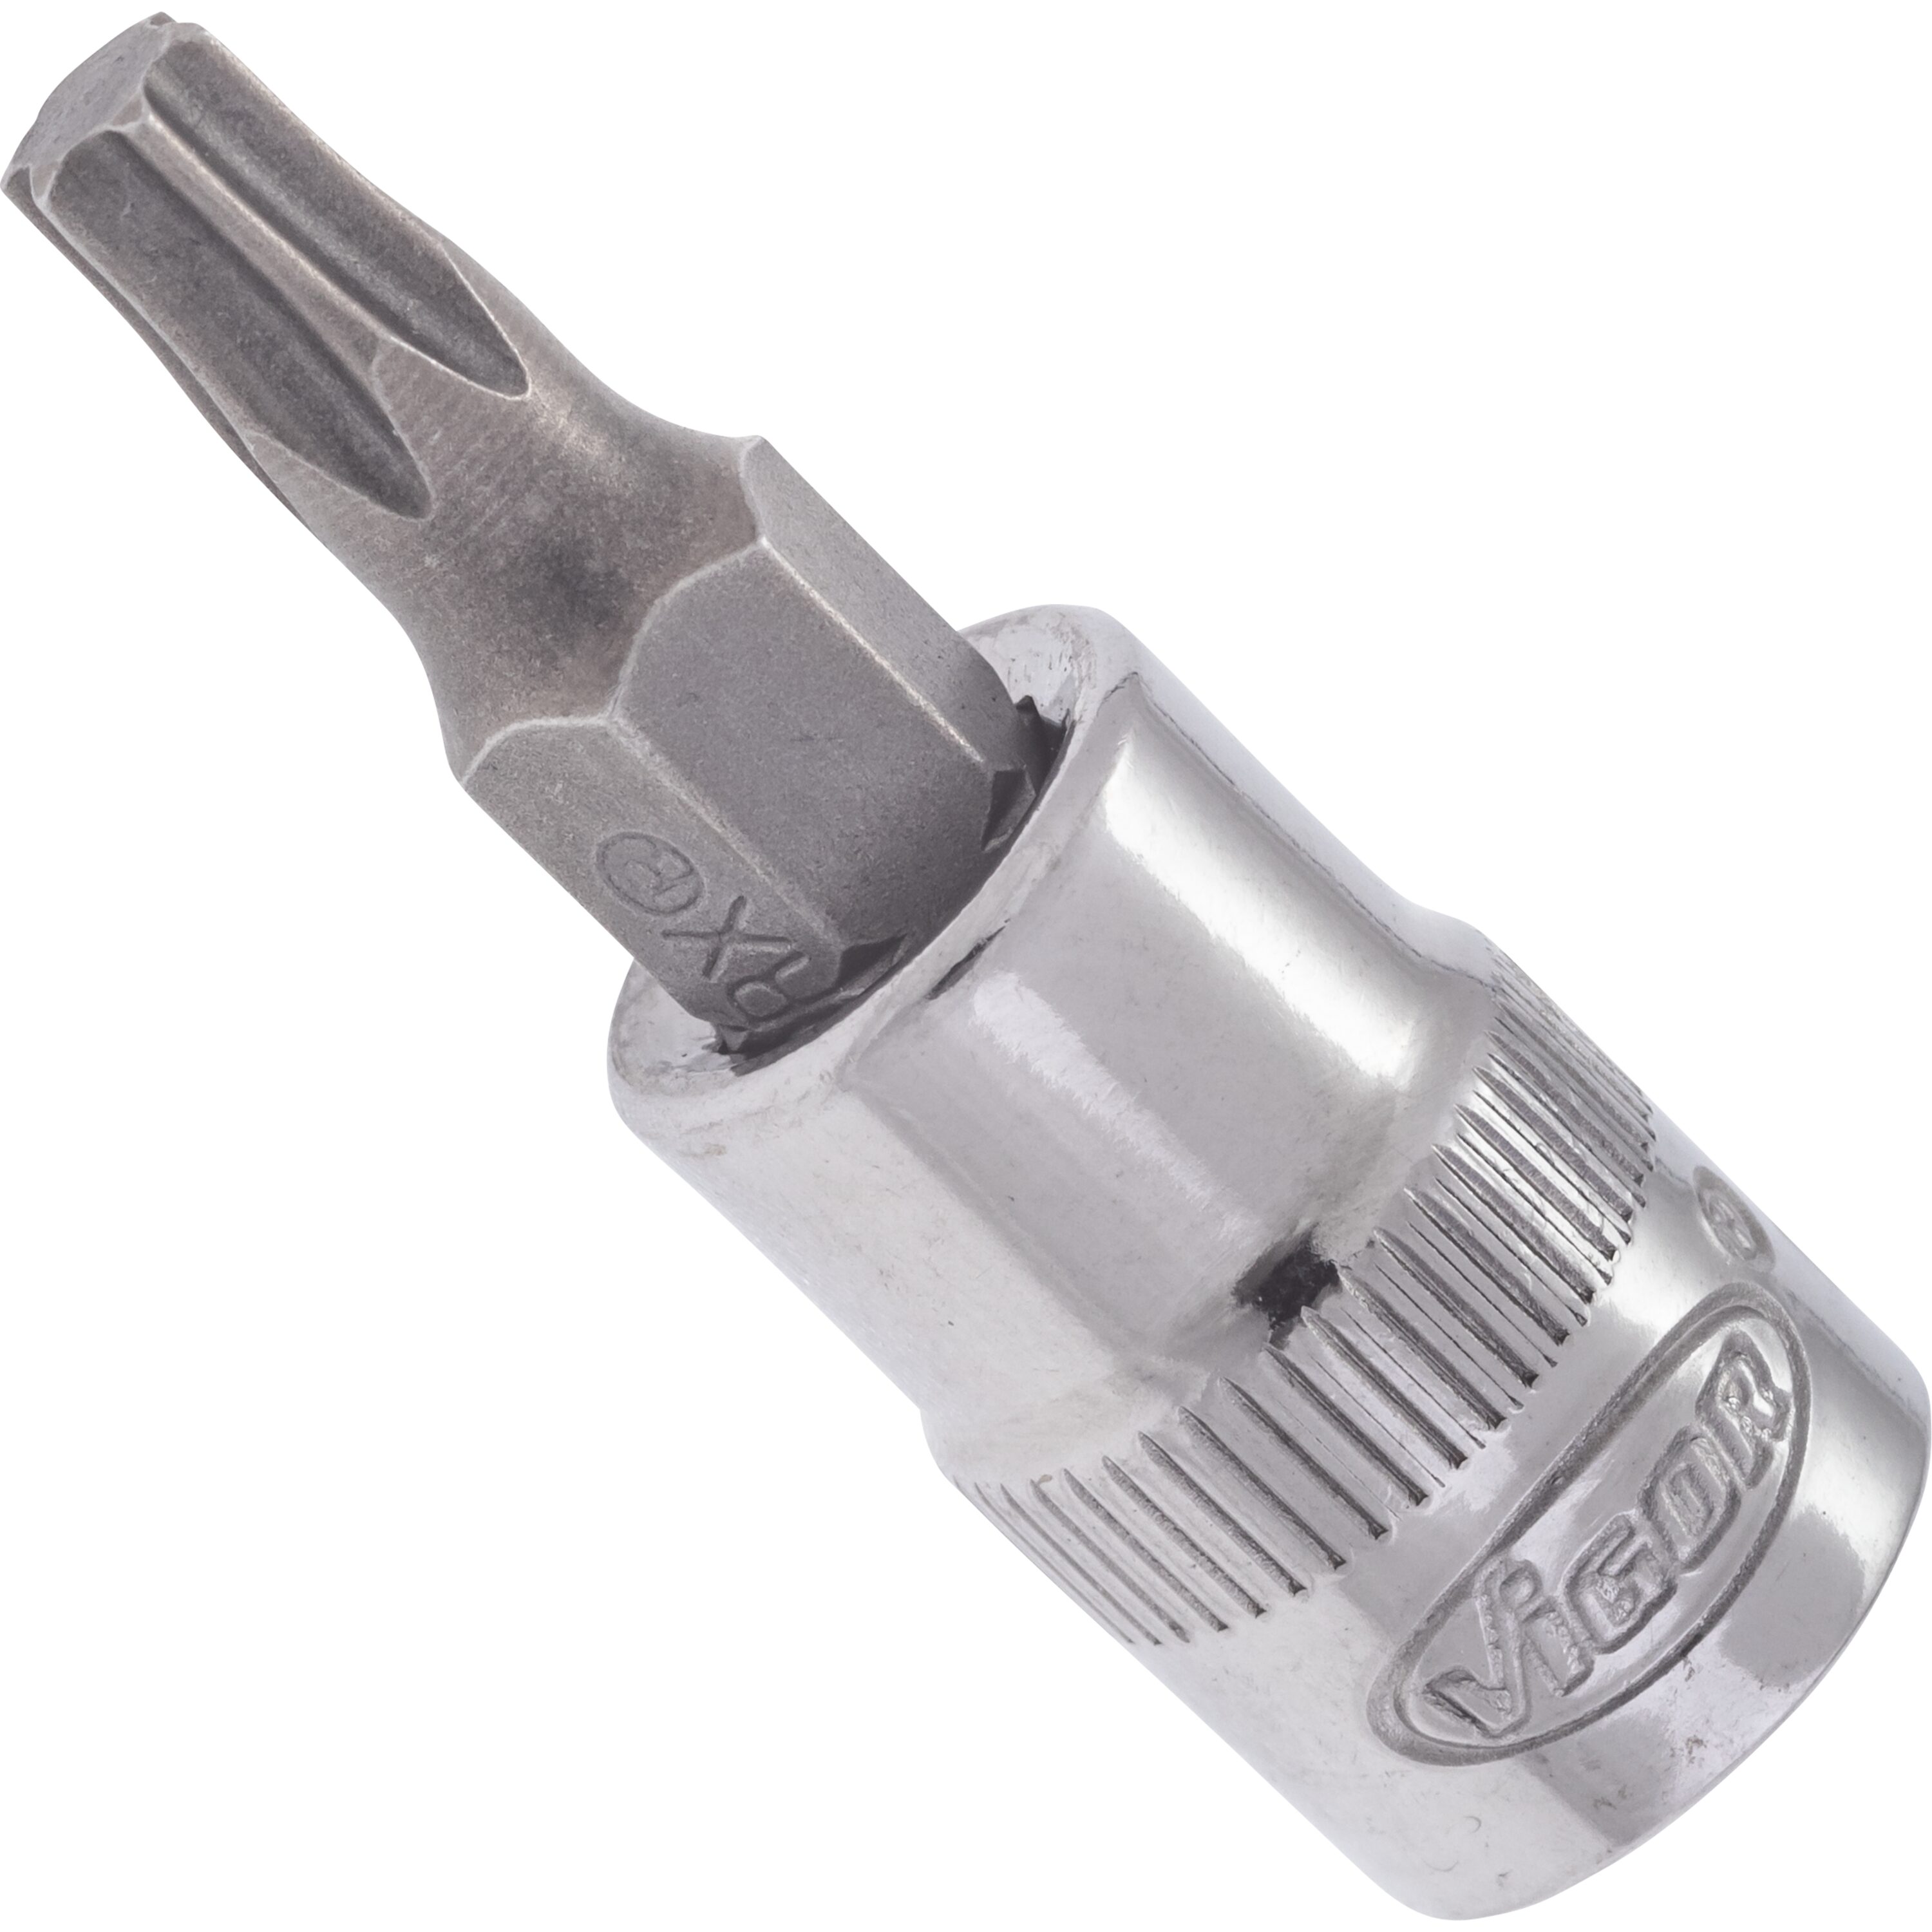 T screwdriver socket | Schraubendreher-Einsätze 6,3 mm (1/4 Zoll ...